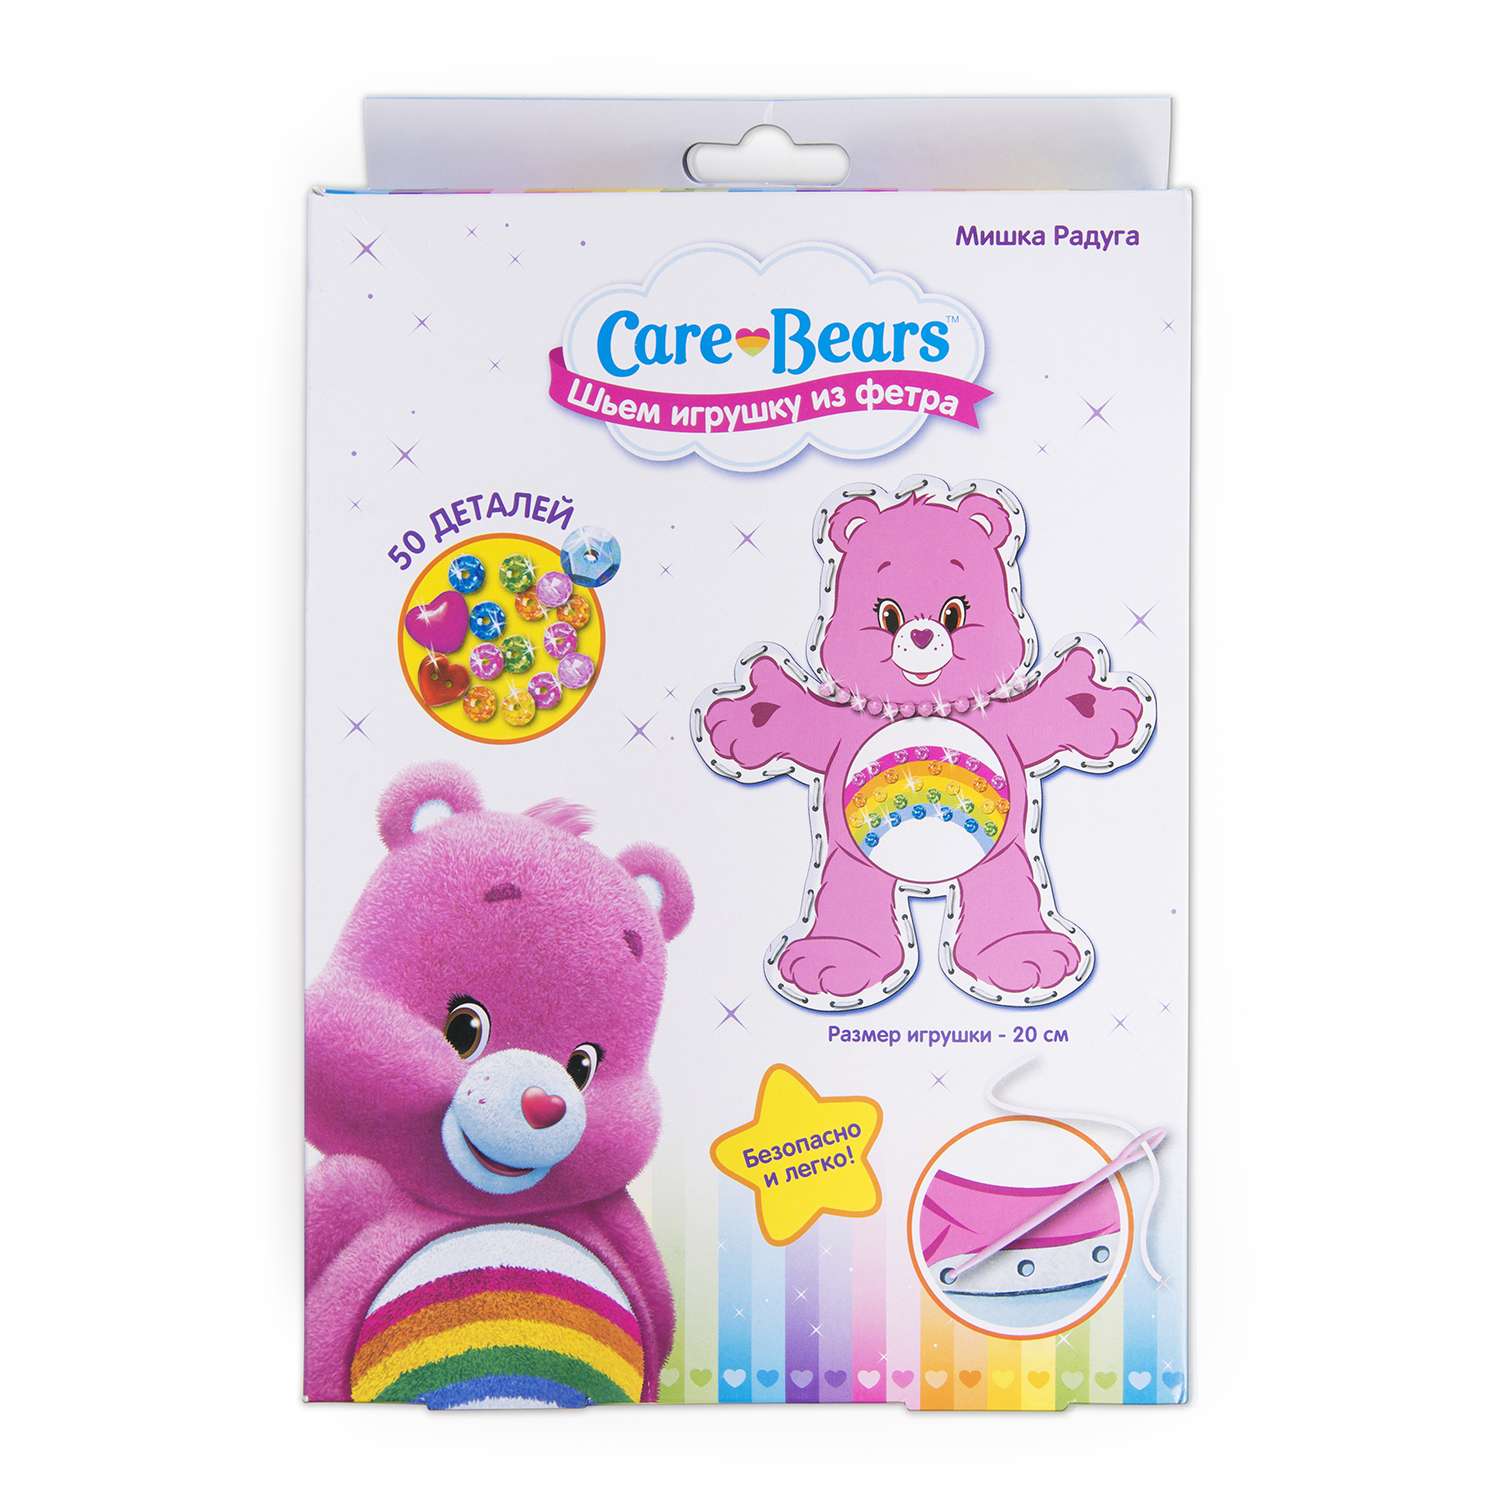 Набор Care Bears шьем игрушку из фетра Мишка Радуга - фото 1